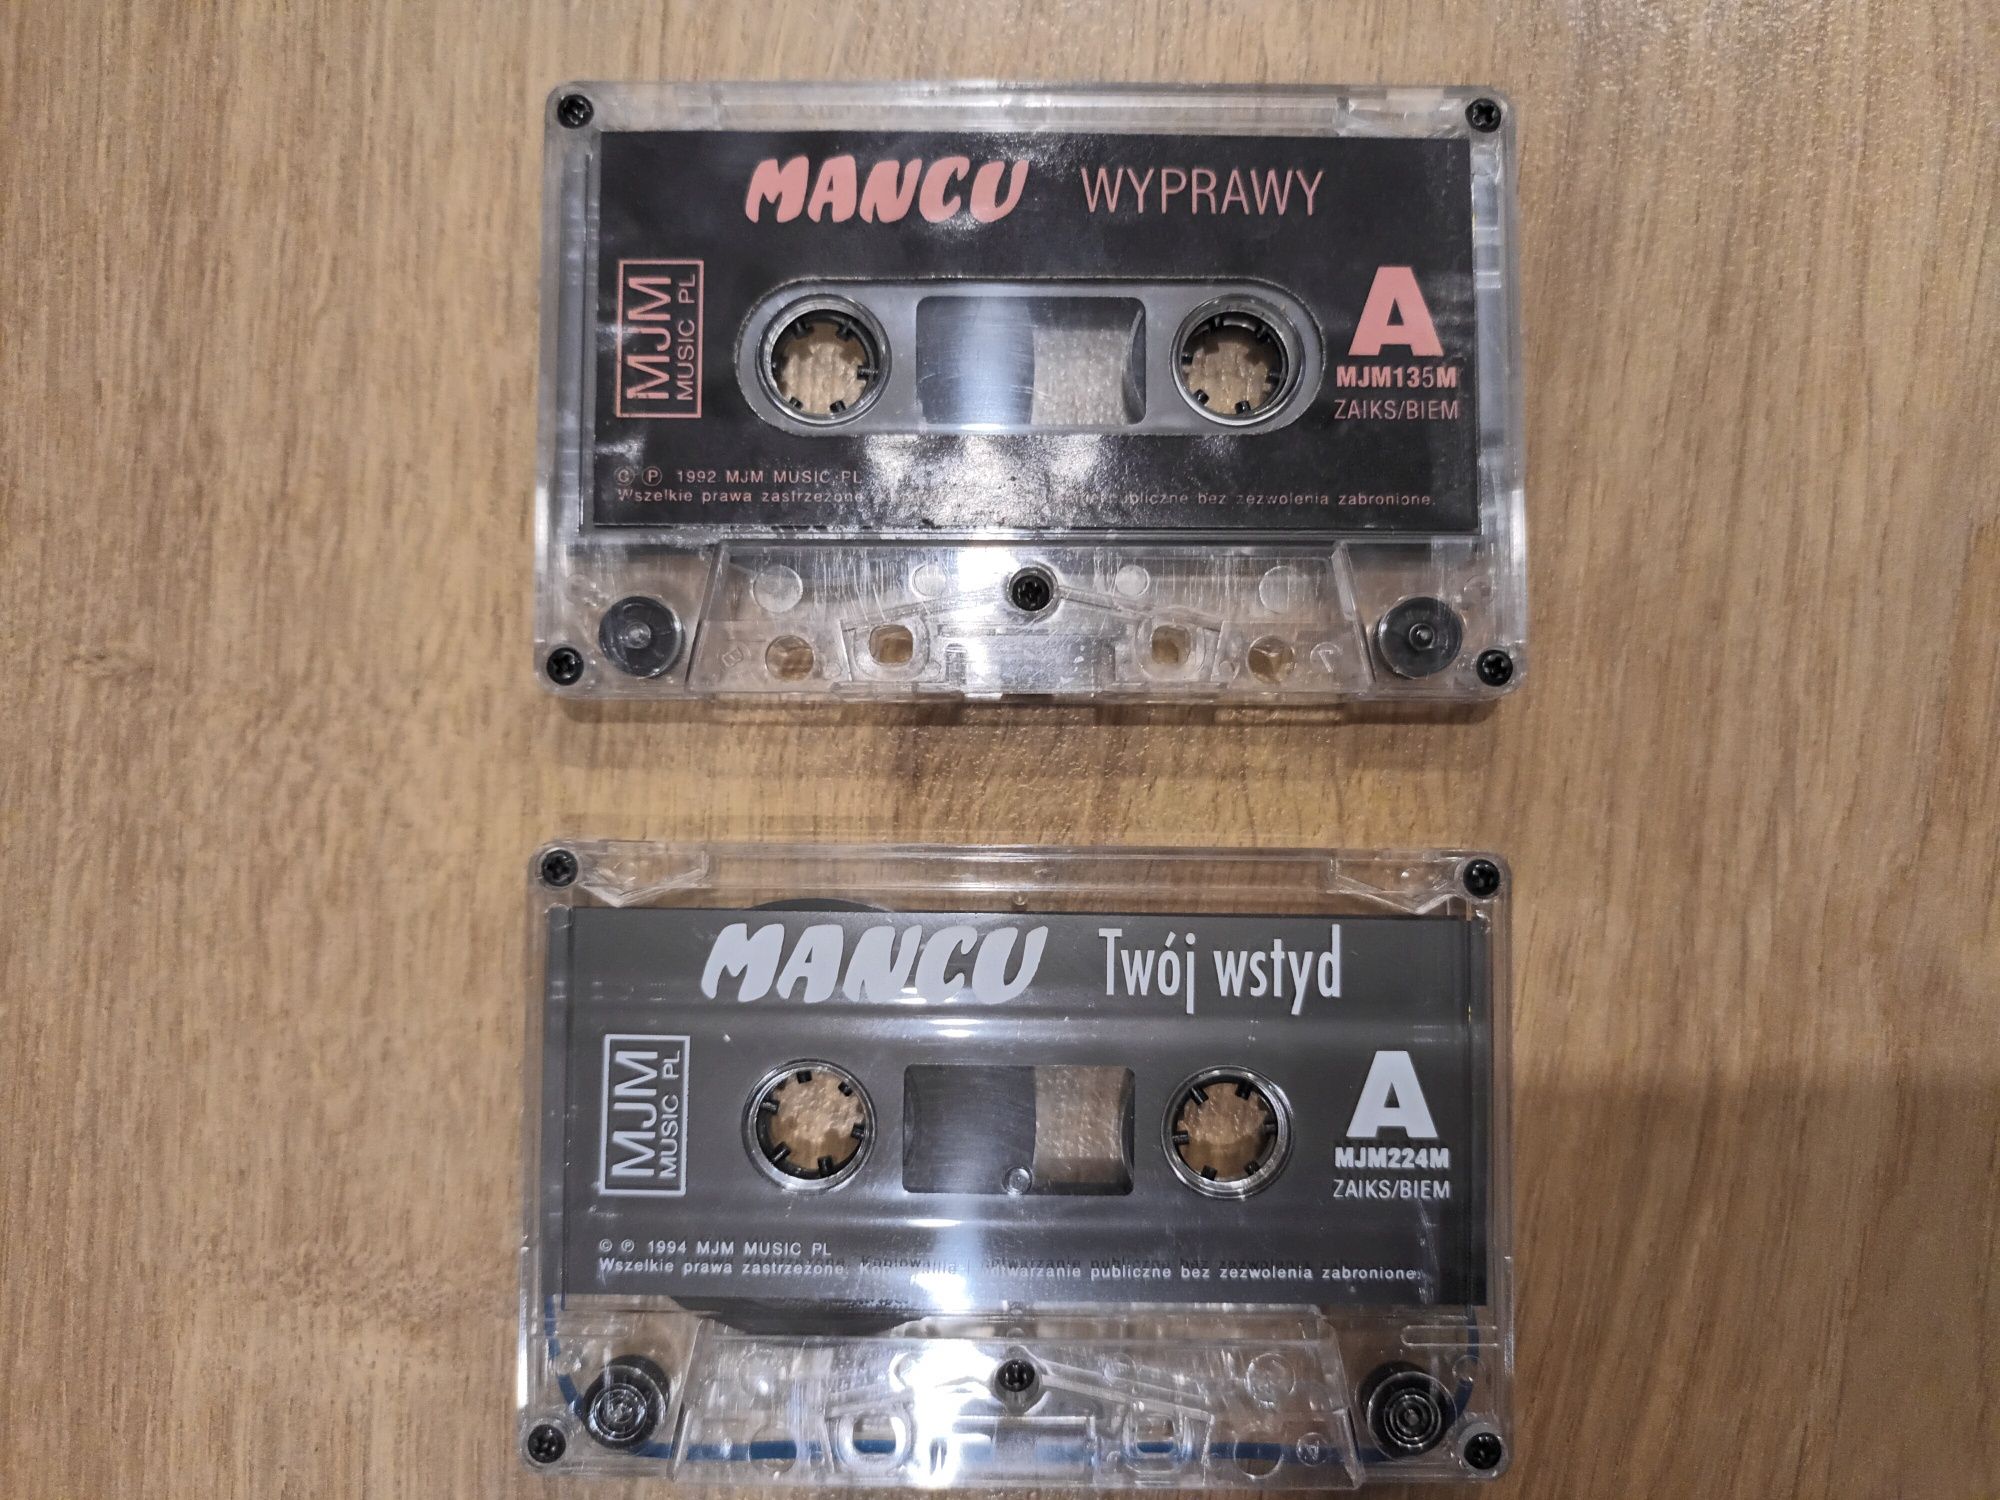 Mancu-Wyprawa, Twój wstyd- 2 kasety magnetofonowe